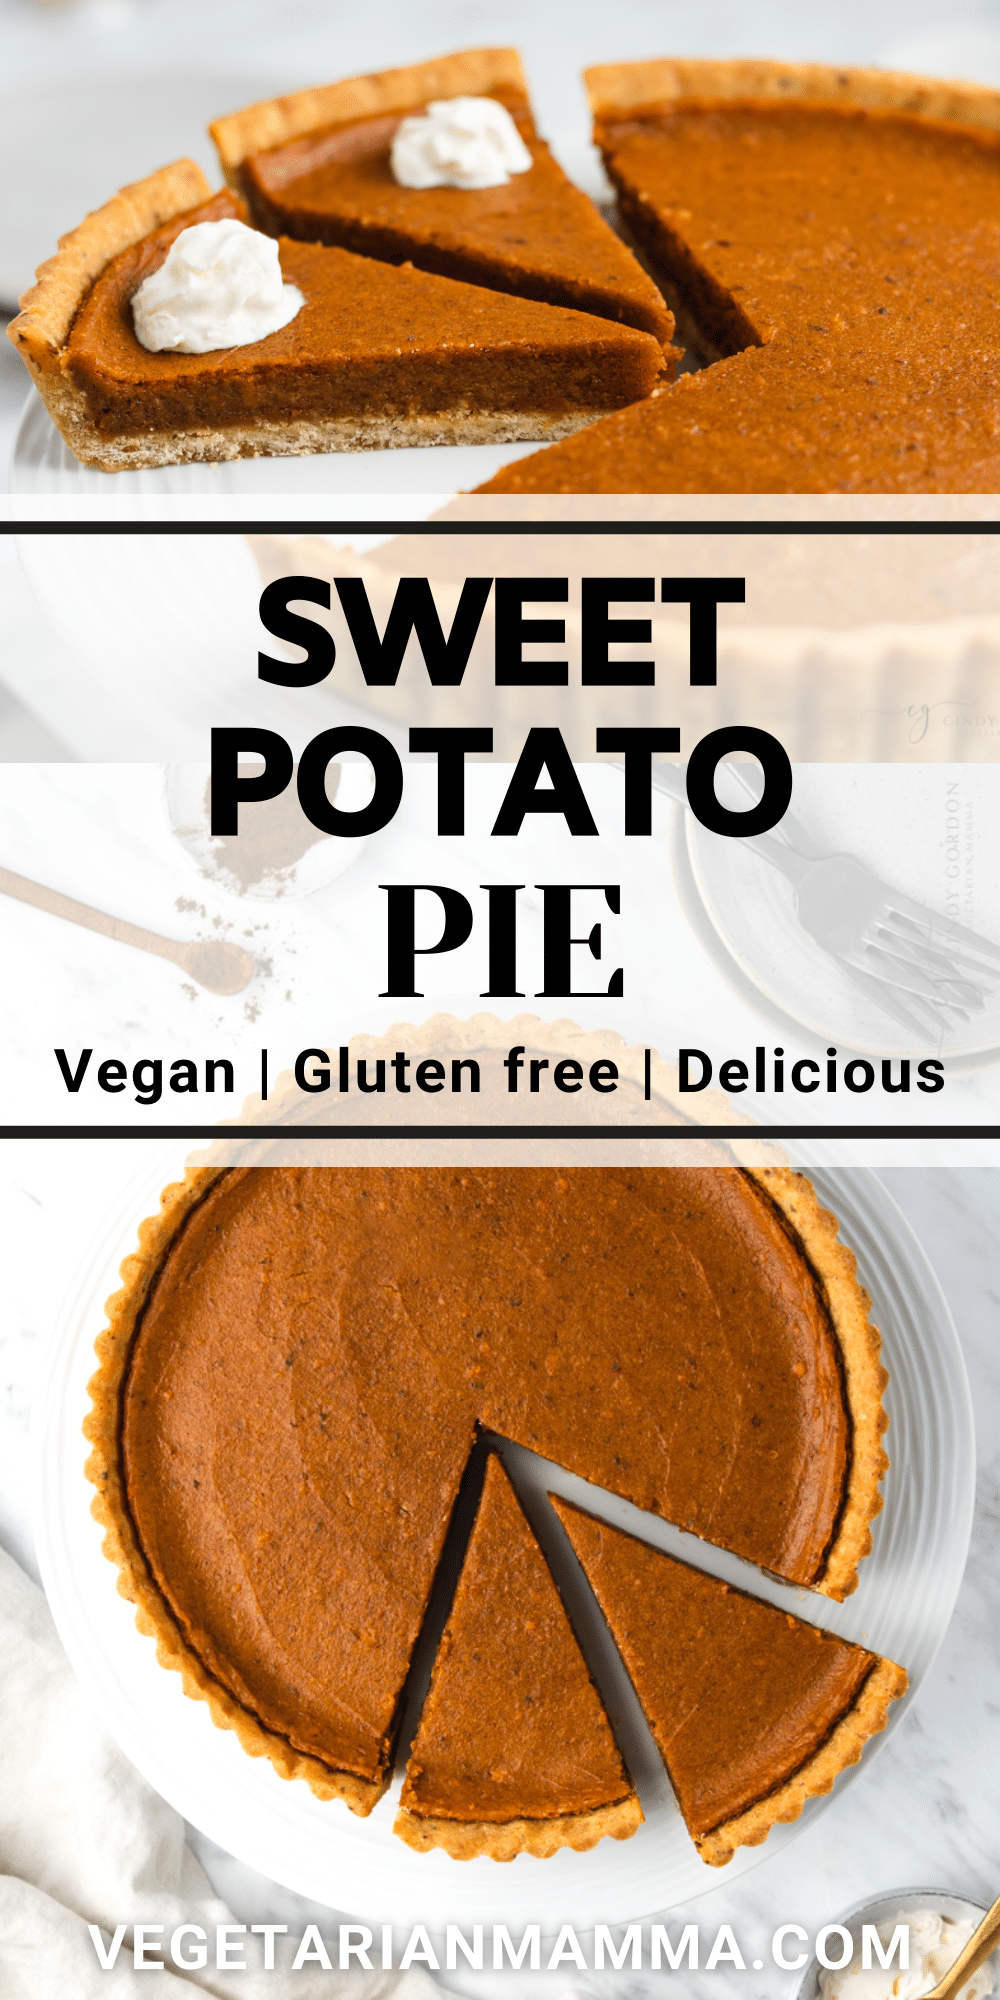 Slices of vegan sweet potato pie with overlay text